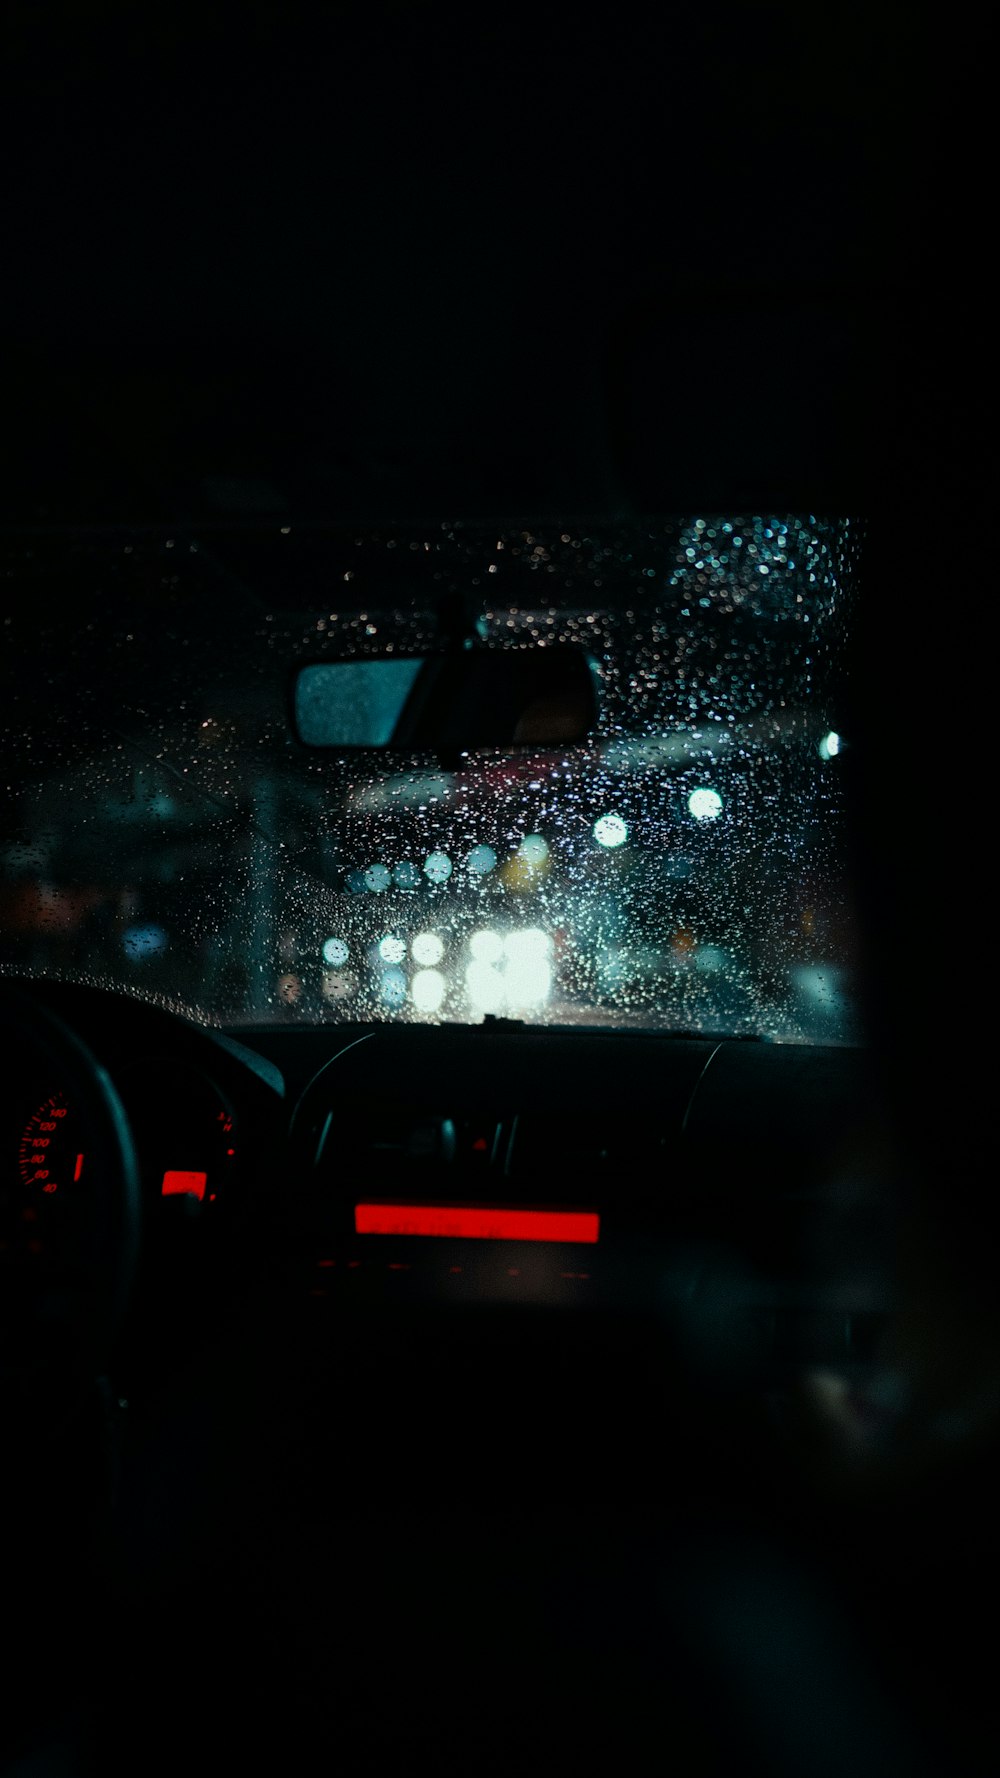 フロントガラスに雨が降った車のダッシュボード